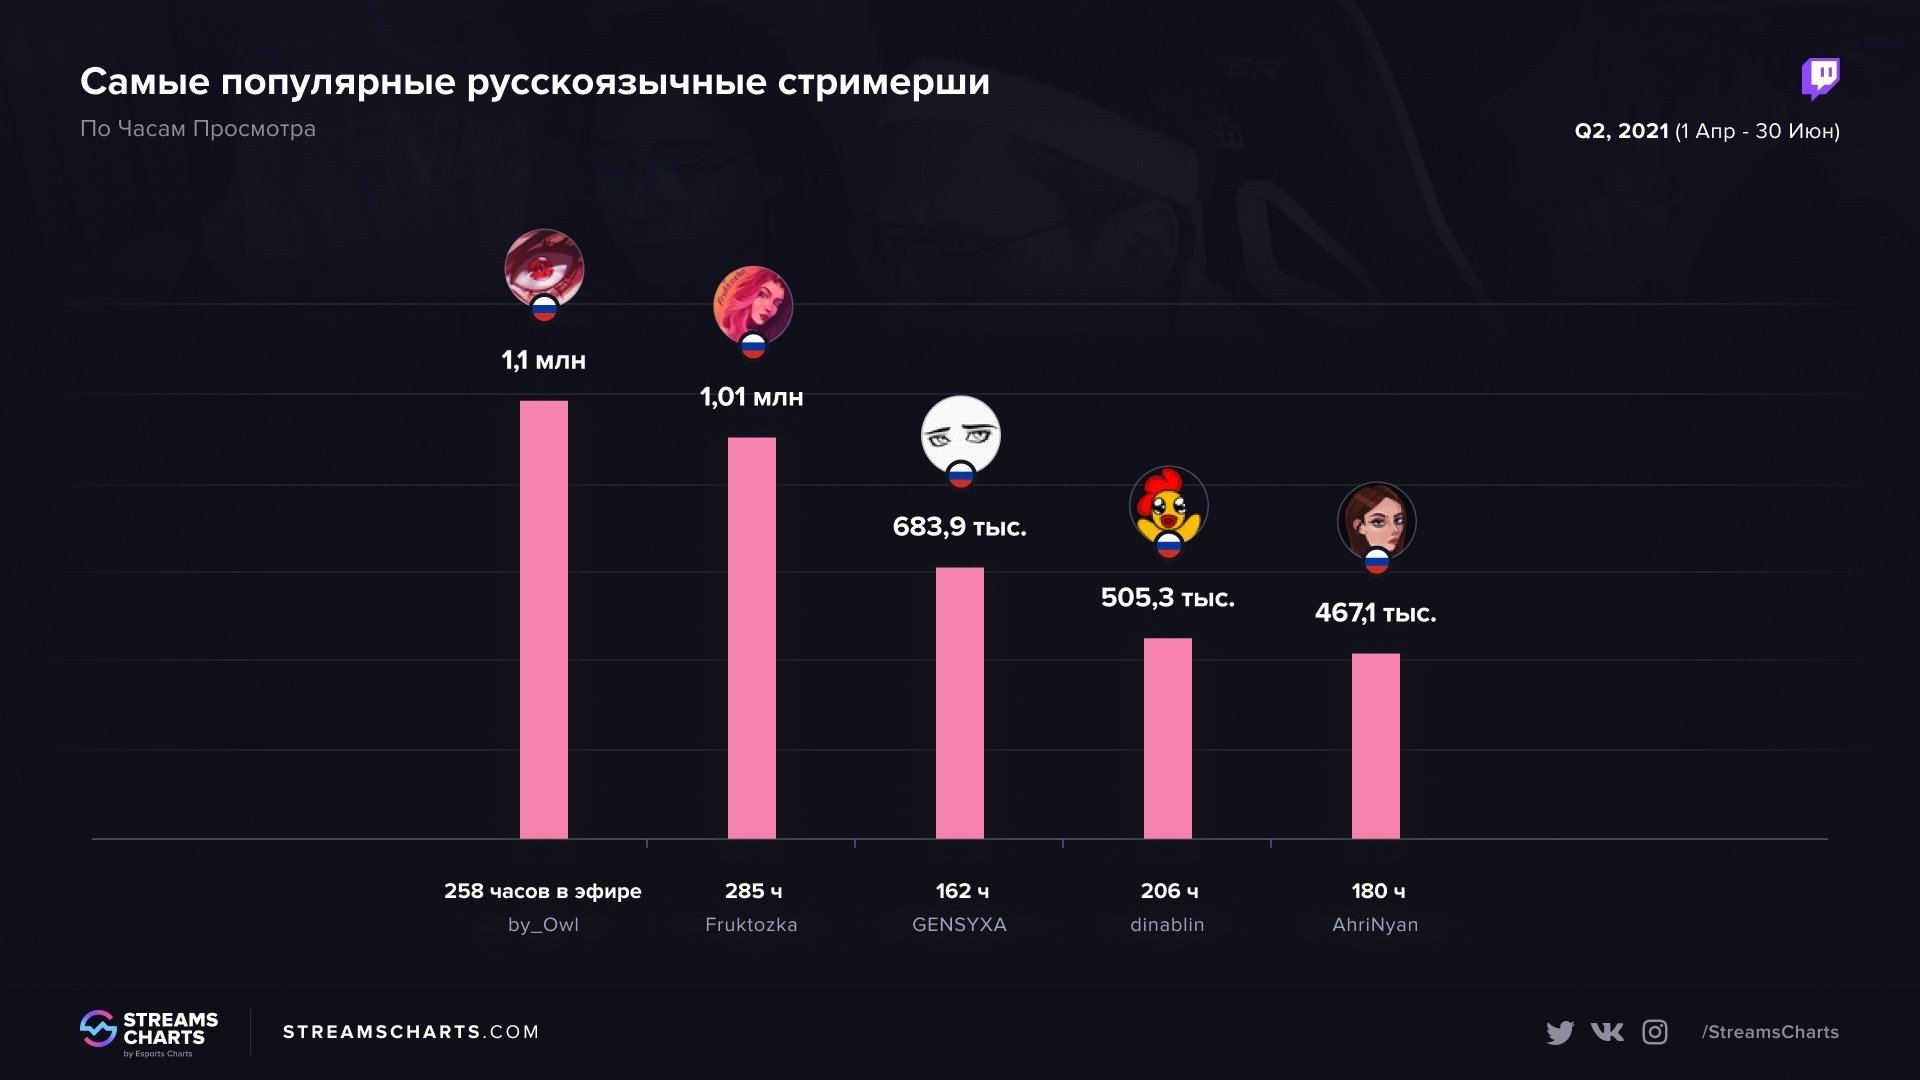 Самые популярные русскоговорящие стримерши на Twitch за второй квартал 2021 года